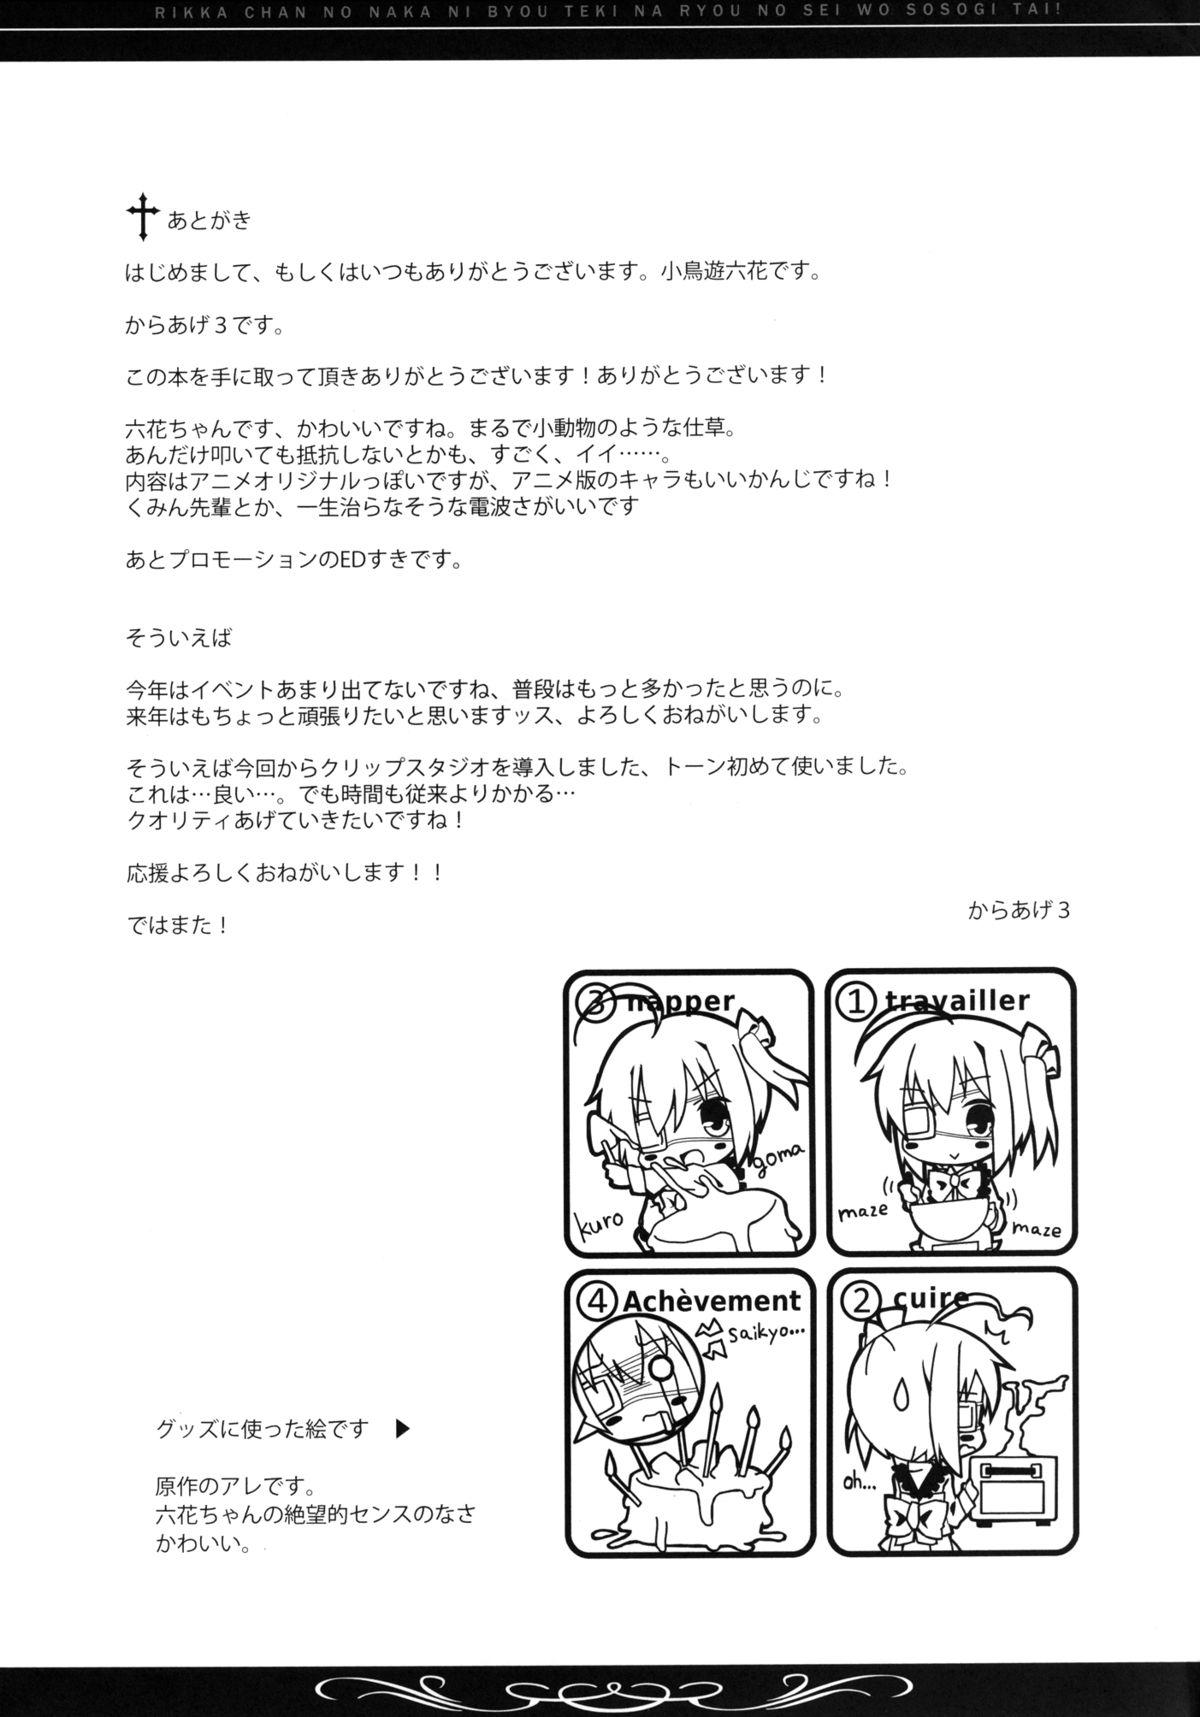 Strap On Rikka-chan no Naka ni, Byouteki na Ryou no Sei o Sosogitai! - Chuunibyou demo koi ga shitai Amateur Blowjob - Page 28